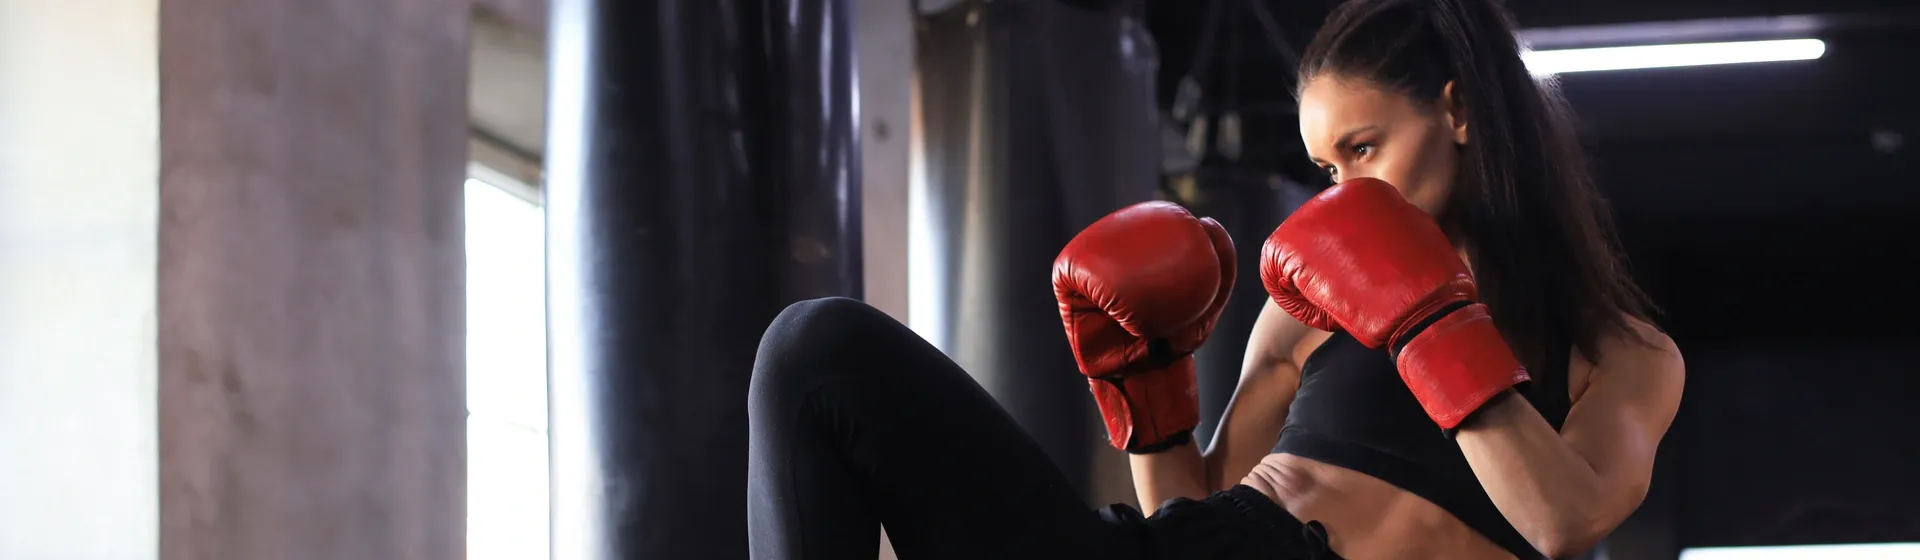 Mulher, com luvas de Muay Thai vermelhas, faz posição de defesa durante treino